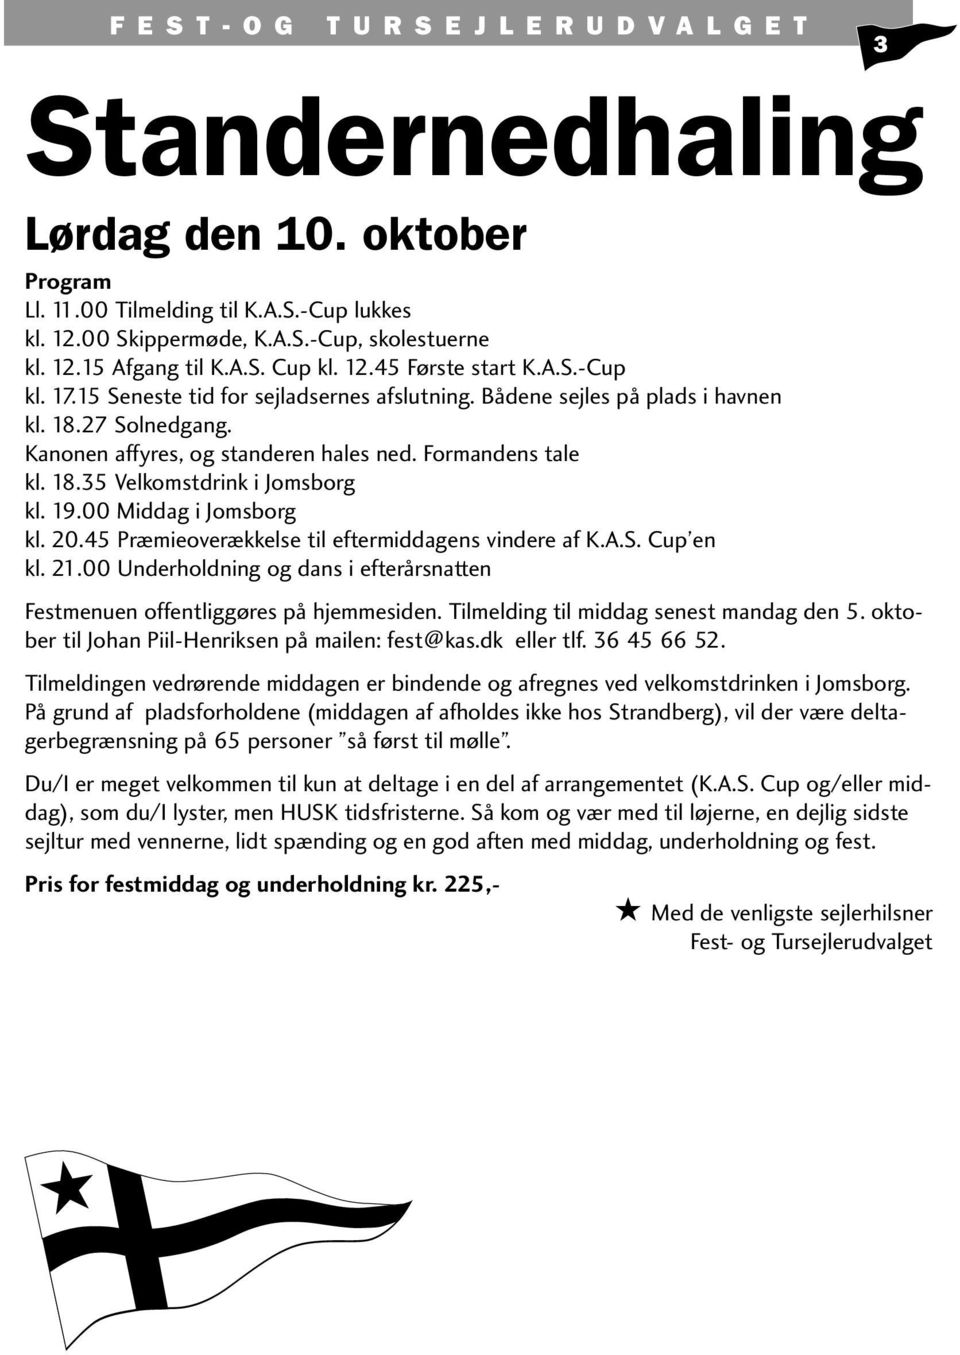 19.00 Middag i Jomsborg kl. 20.45 Præmieoverækkelse til eftermiddagens vindere af K.A.S. Cup en kl. 21.00 Underholdning og dans i efterårsnatten Festmenuen offentliggøres på hjemmesiden.